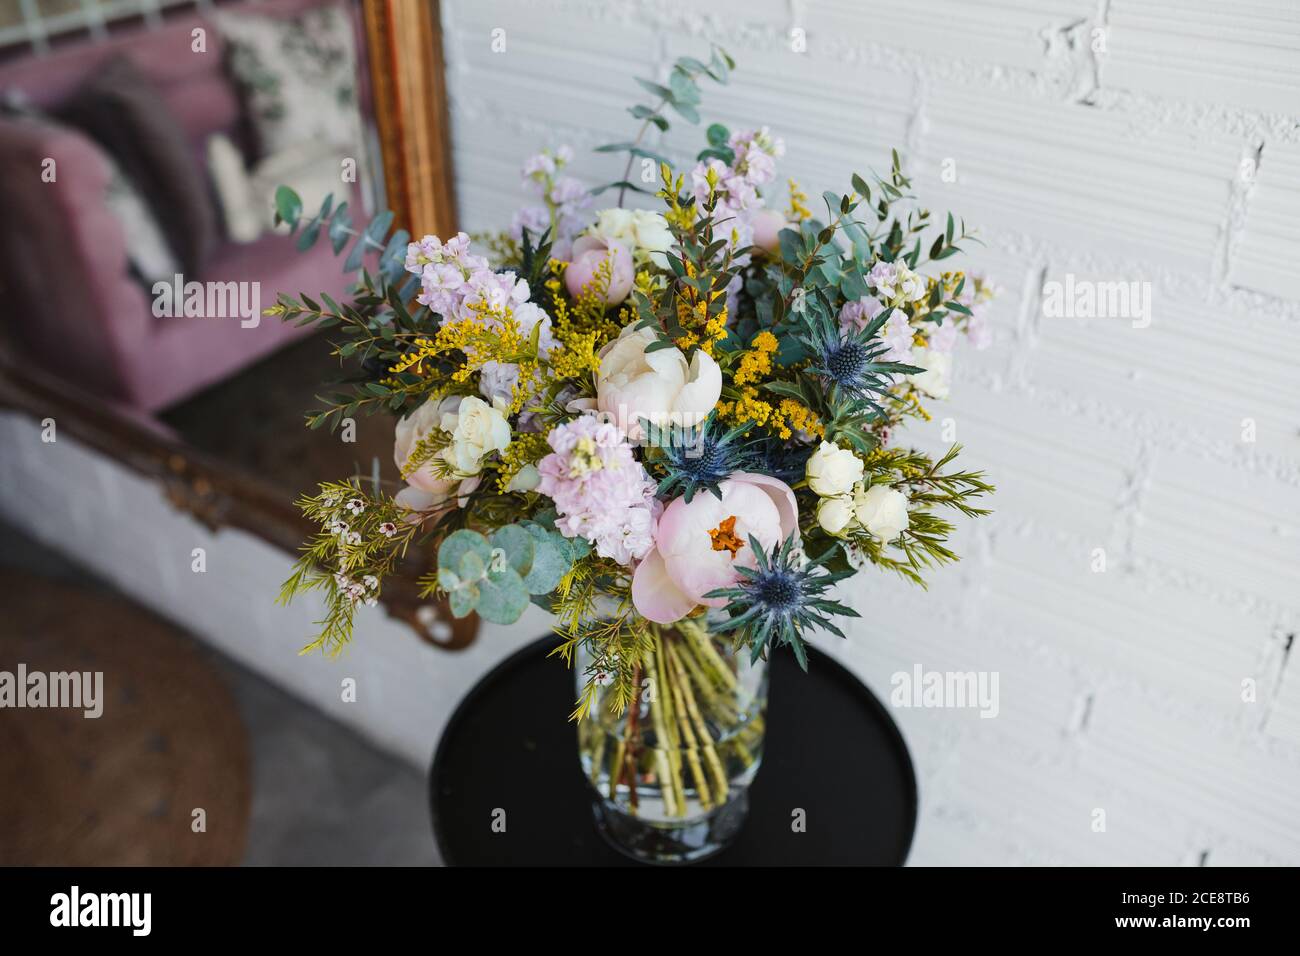 Hoher Winkel von schönen Frühling Bouquet mit verschiedenen bunten blühenden Blumen einschließlich rosa Pfingstrosen und blauen Meer Stechpalme Blumen mit mimosa Zweige auf Glasvase auf Tisch in der Nähe weiß angeordnet Wand Stockfoto